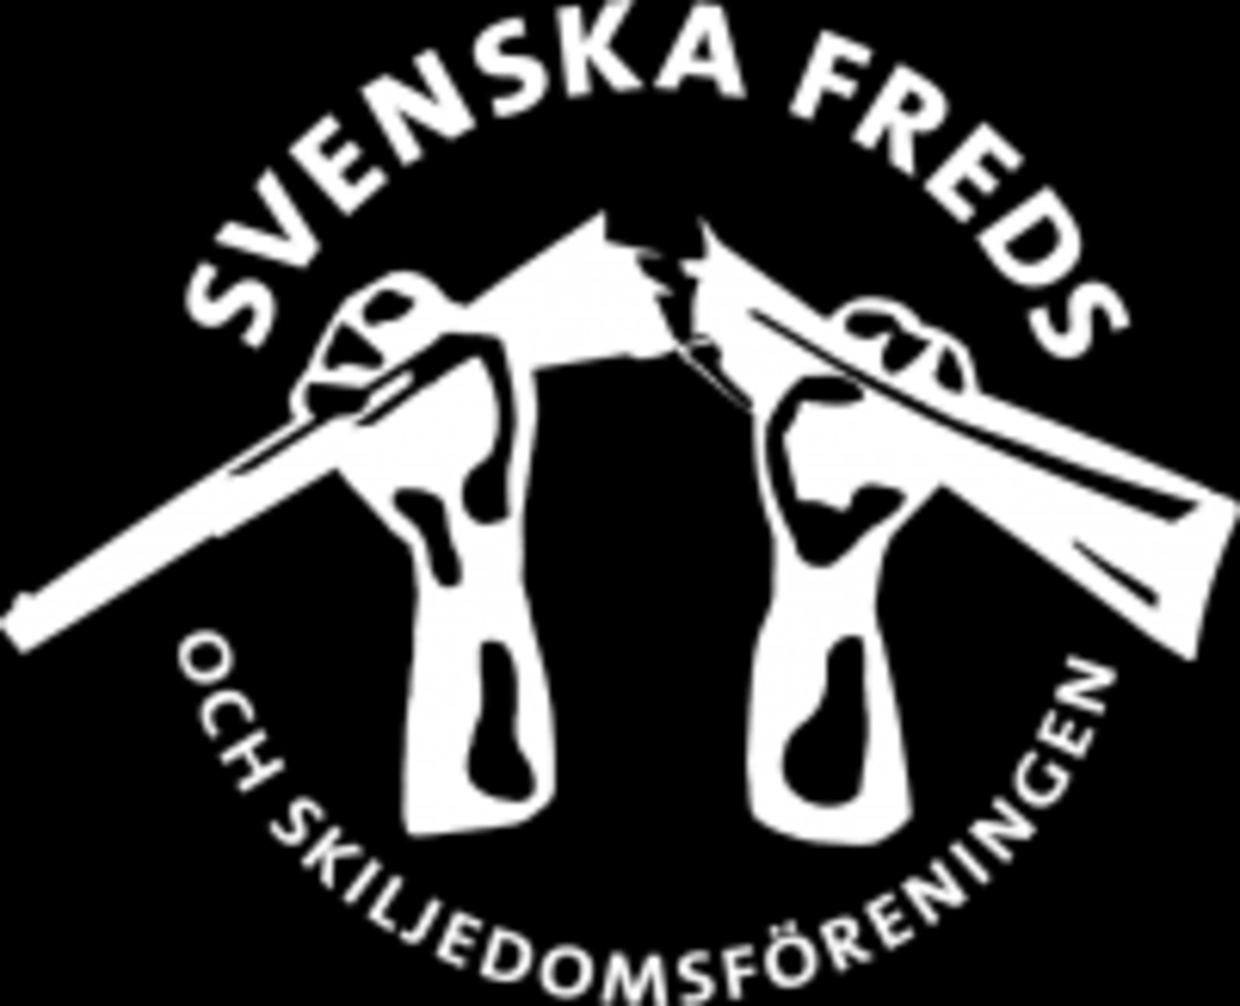 Svenska Freds er verdens ældste fredsbevægelse. De er modstandere af Sveriges ansøgning om NATO-medlemskab.